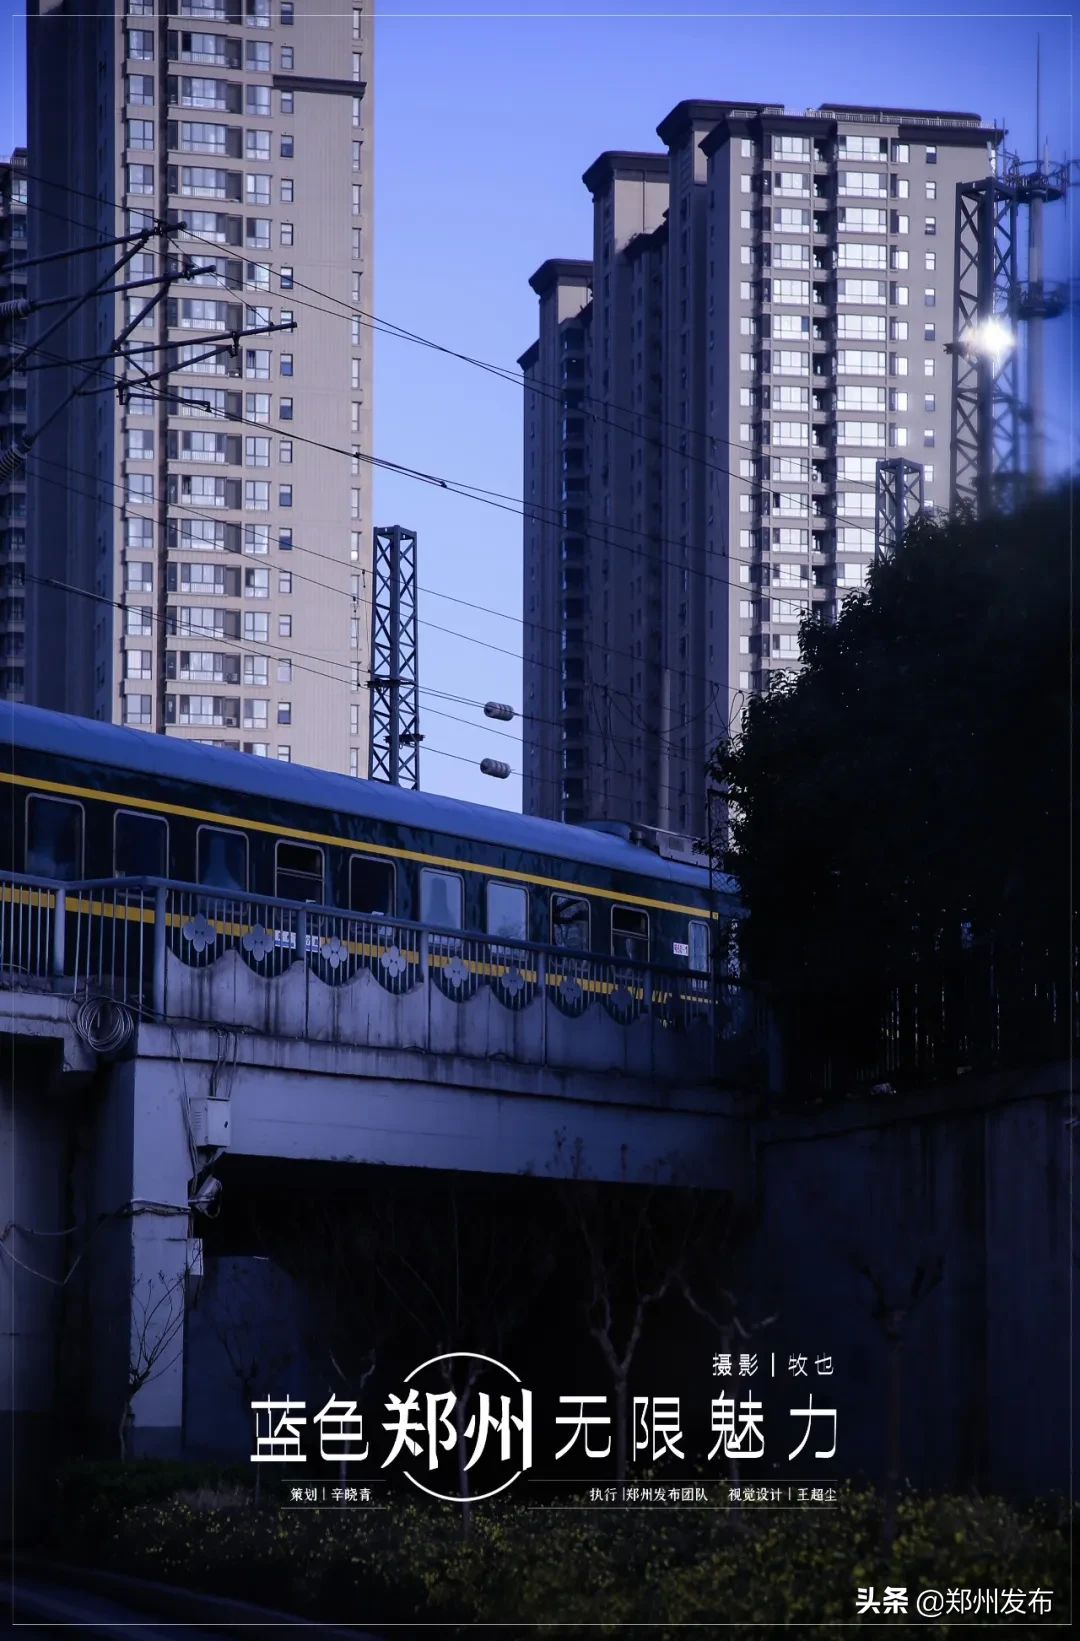 一组蓝色调的郑州街景，有着别样魅力